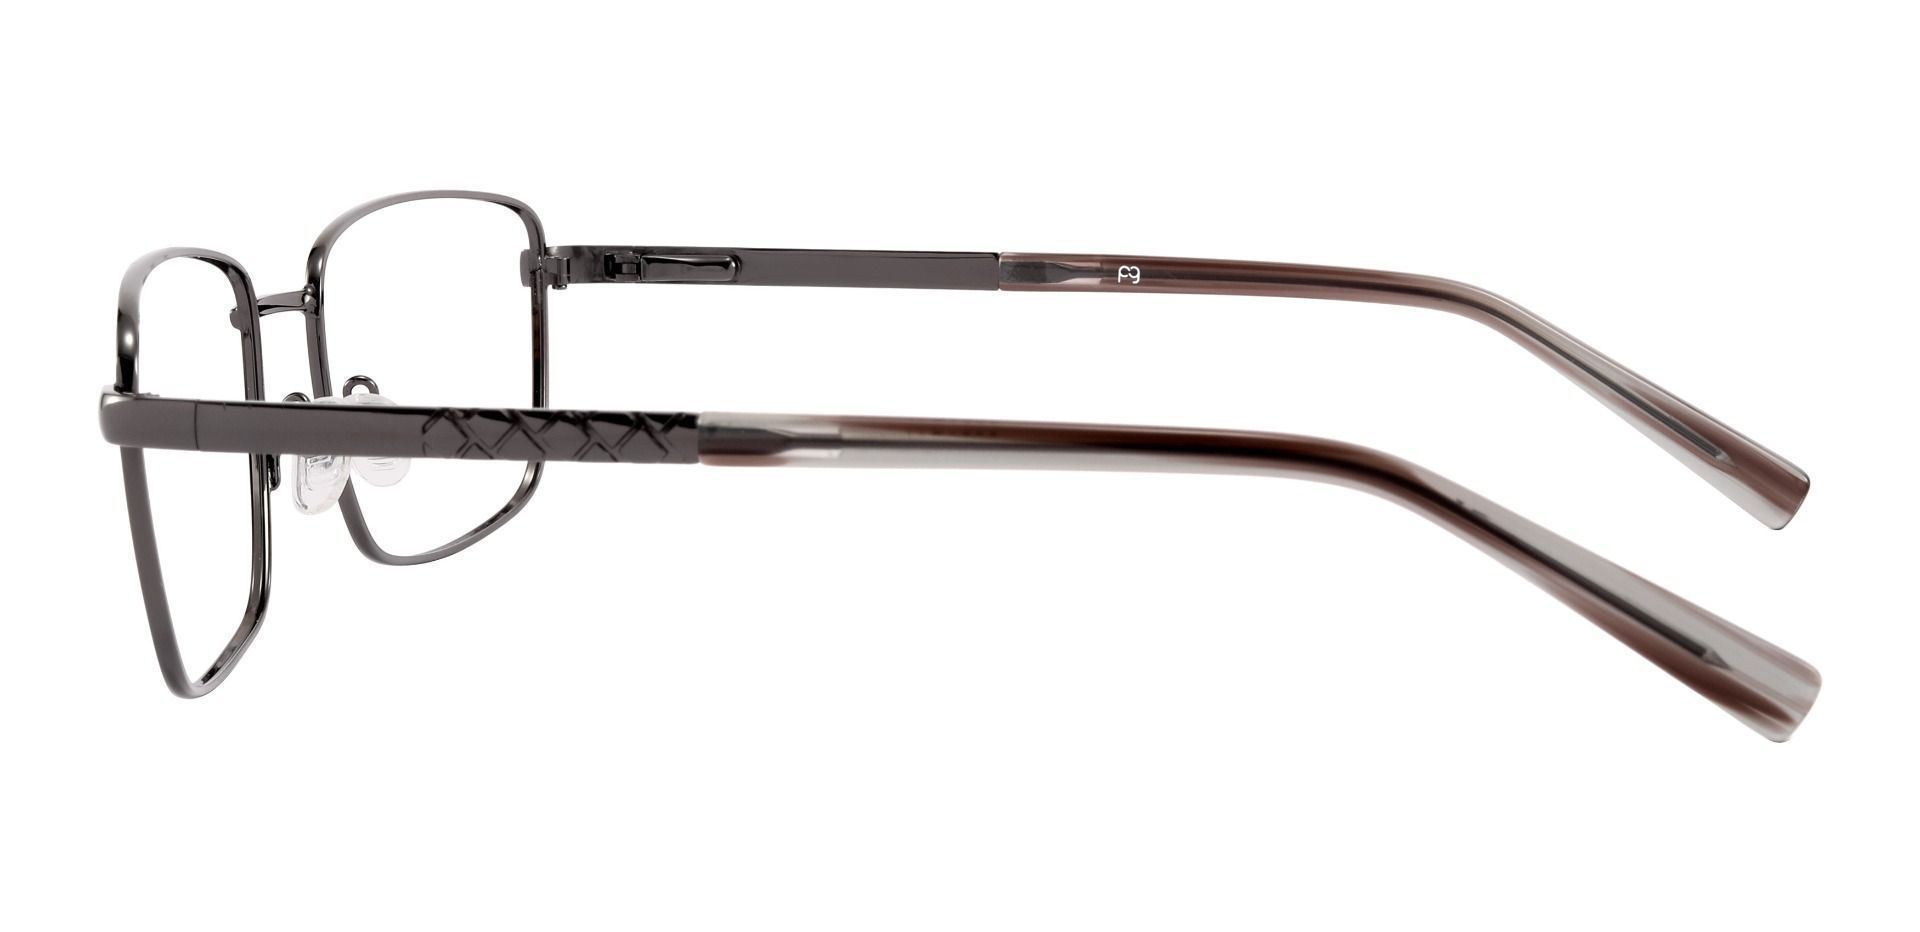 Marshall Rectangle Eyeglasses Frame - Gray